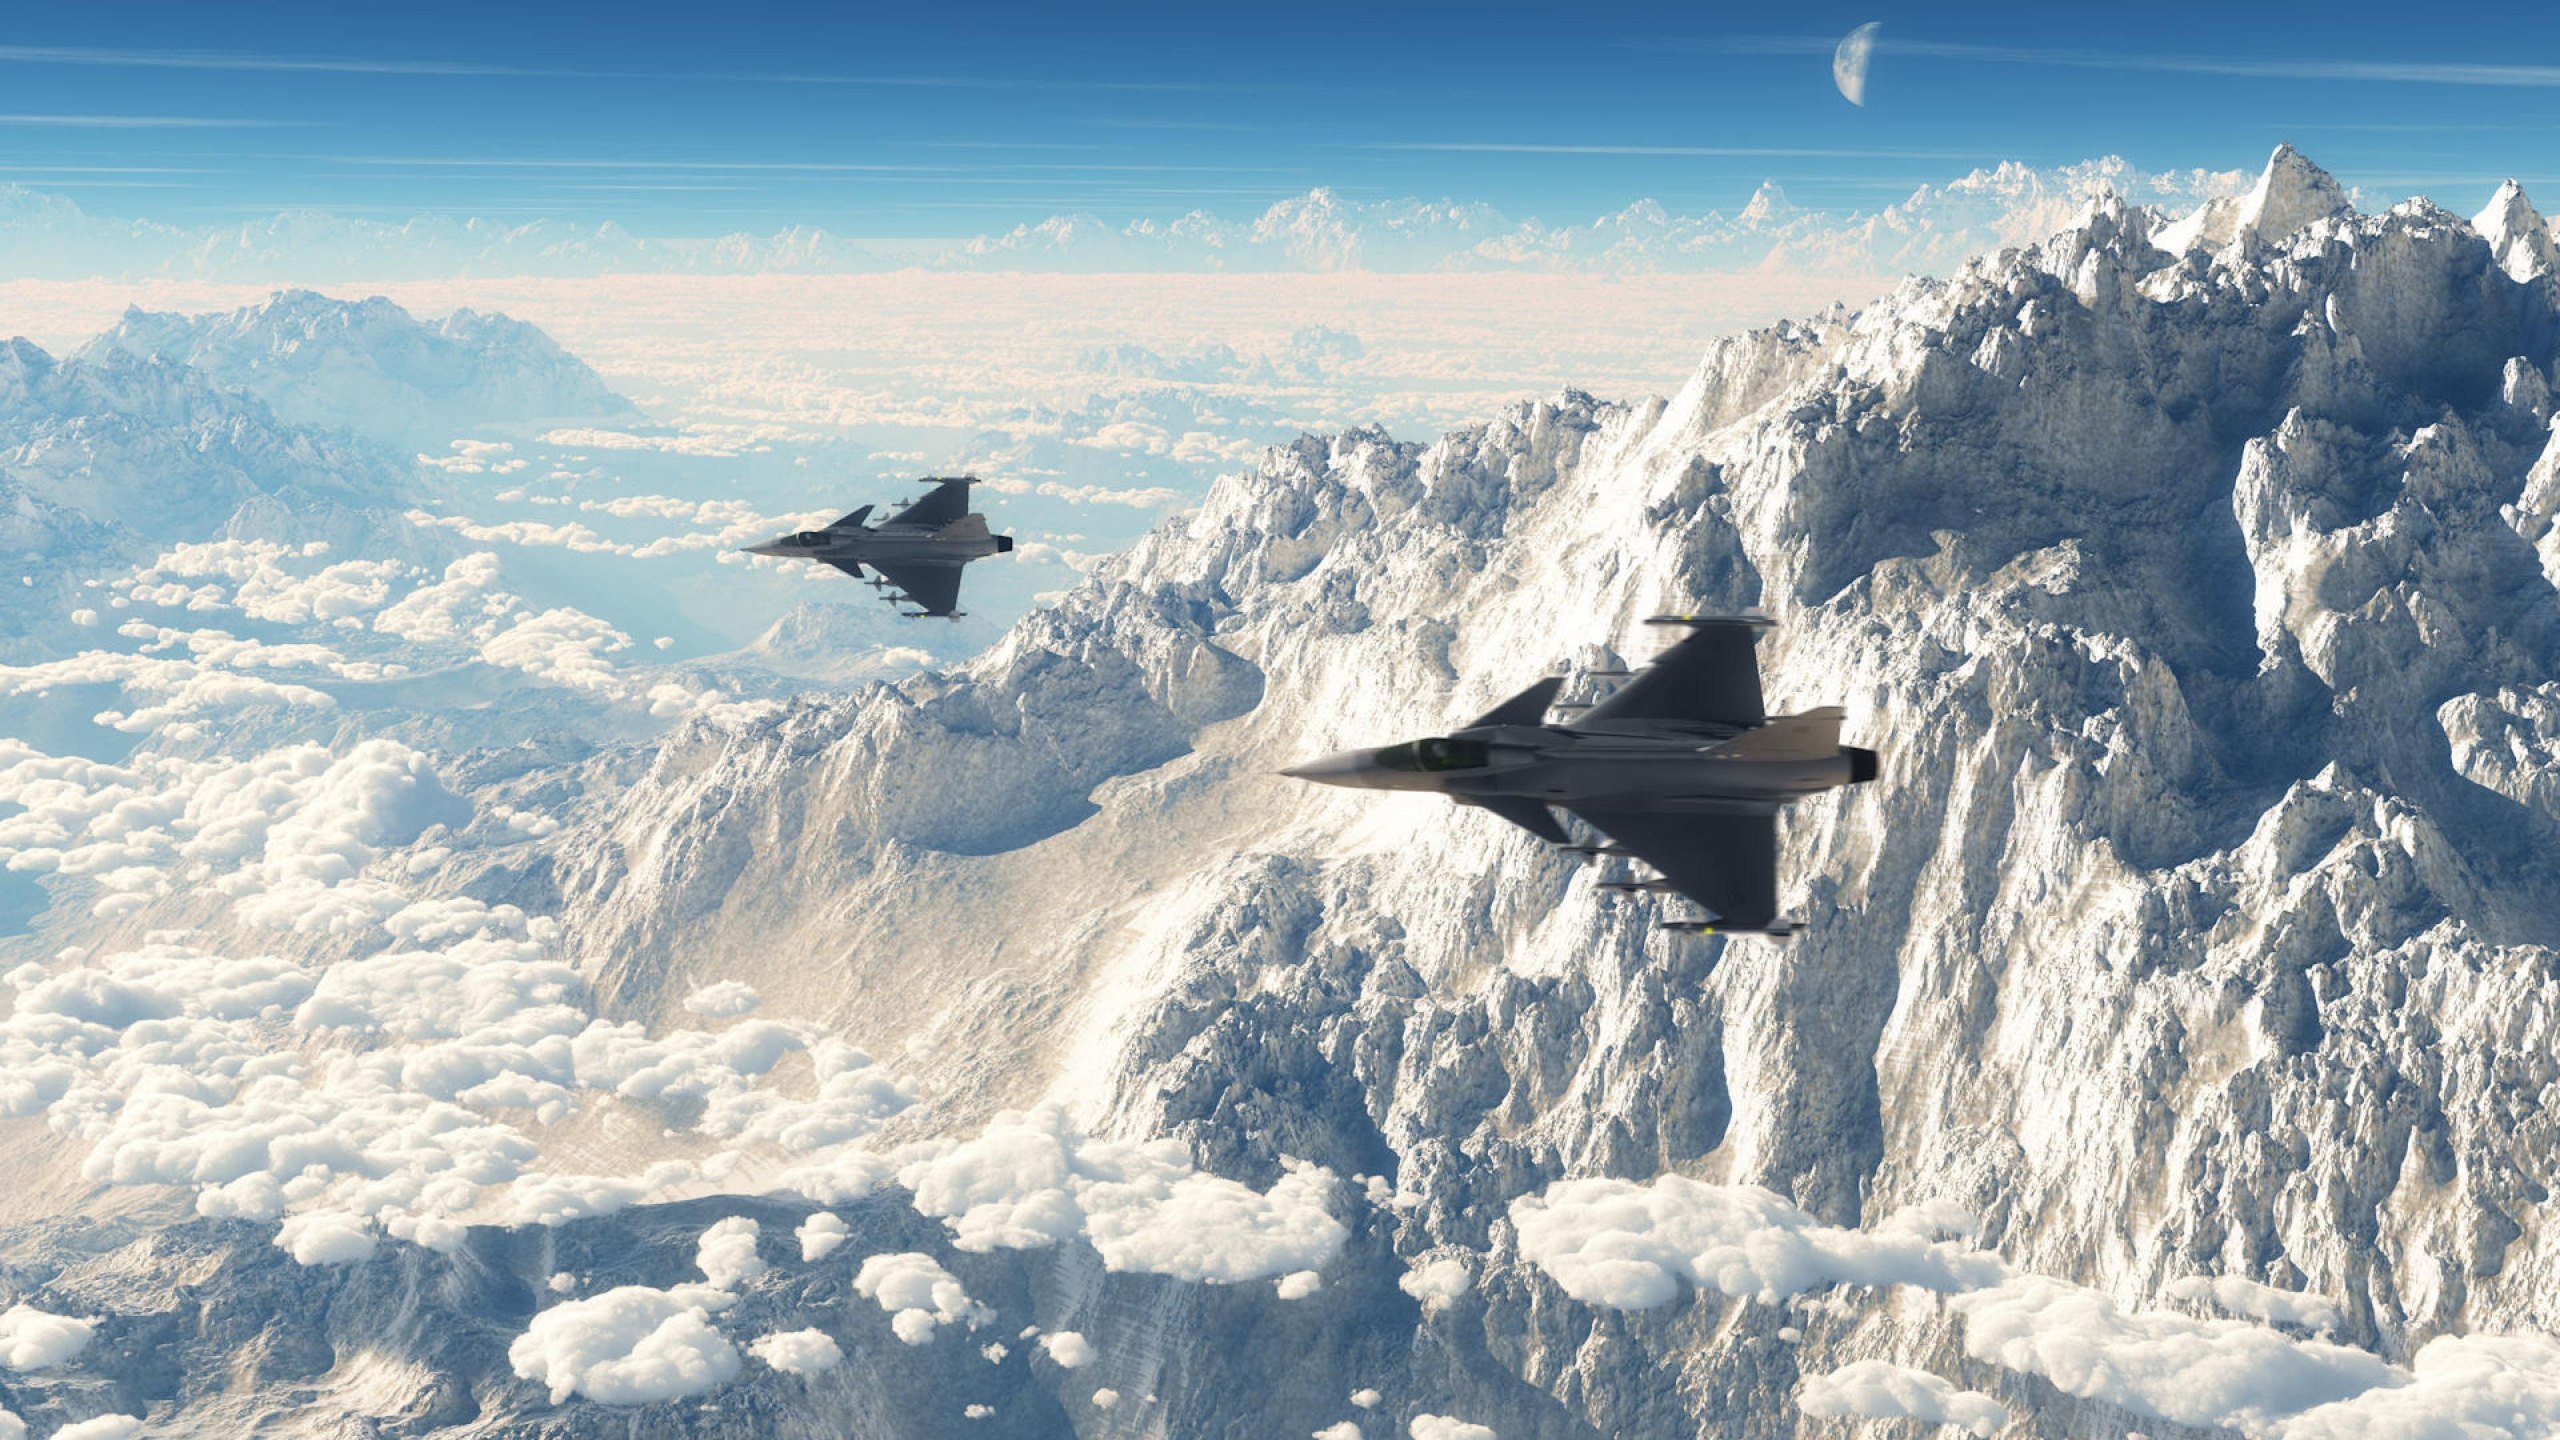 Schwarzes Kampfflugzeug, Das Tagsüber Über Schneebedeckten Berg Fliegt. Wallpaper in 2560x1440 Resolution